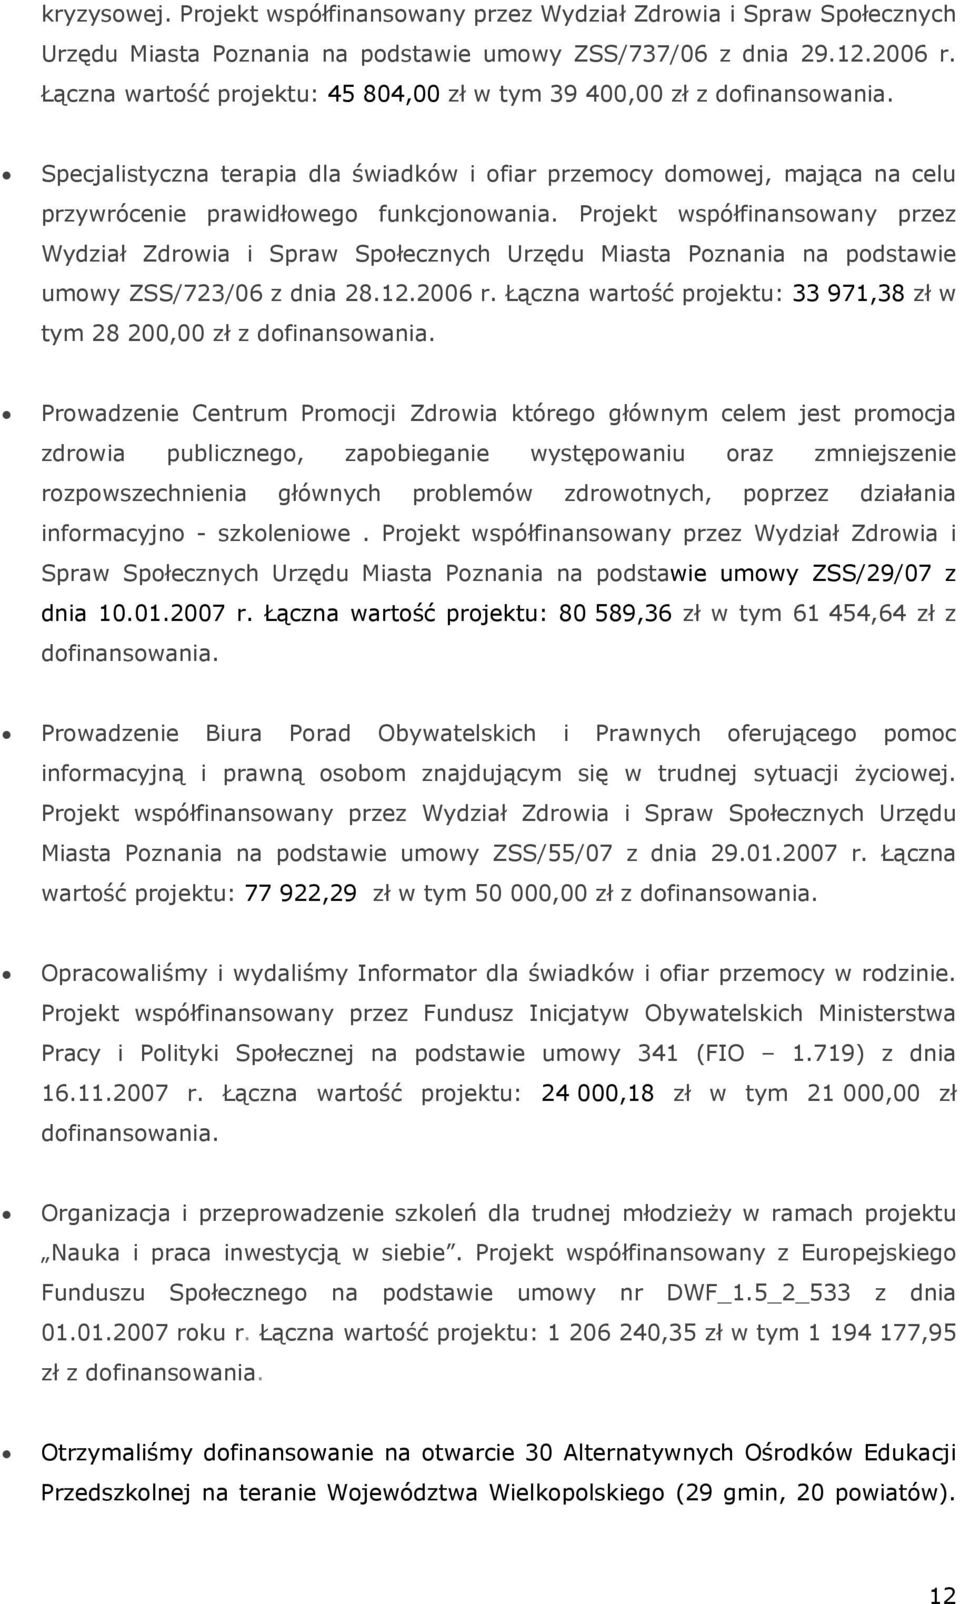 Projekt współfinansowany przez Wydział Zdrowia i Spraw Społecznych Urzędu Miasta Poznania na podstawie umowy ZSS/723/06 z dnia 28.12.2006 r.